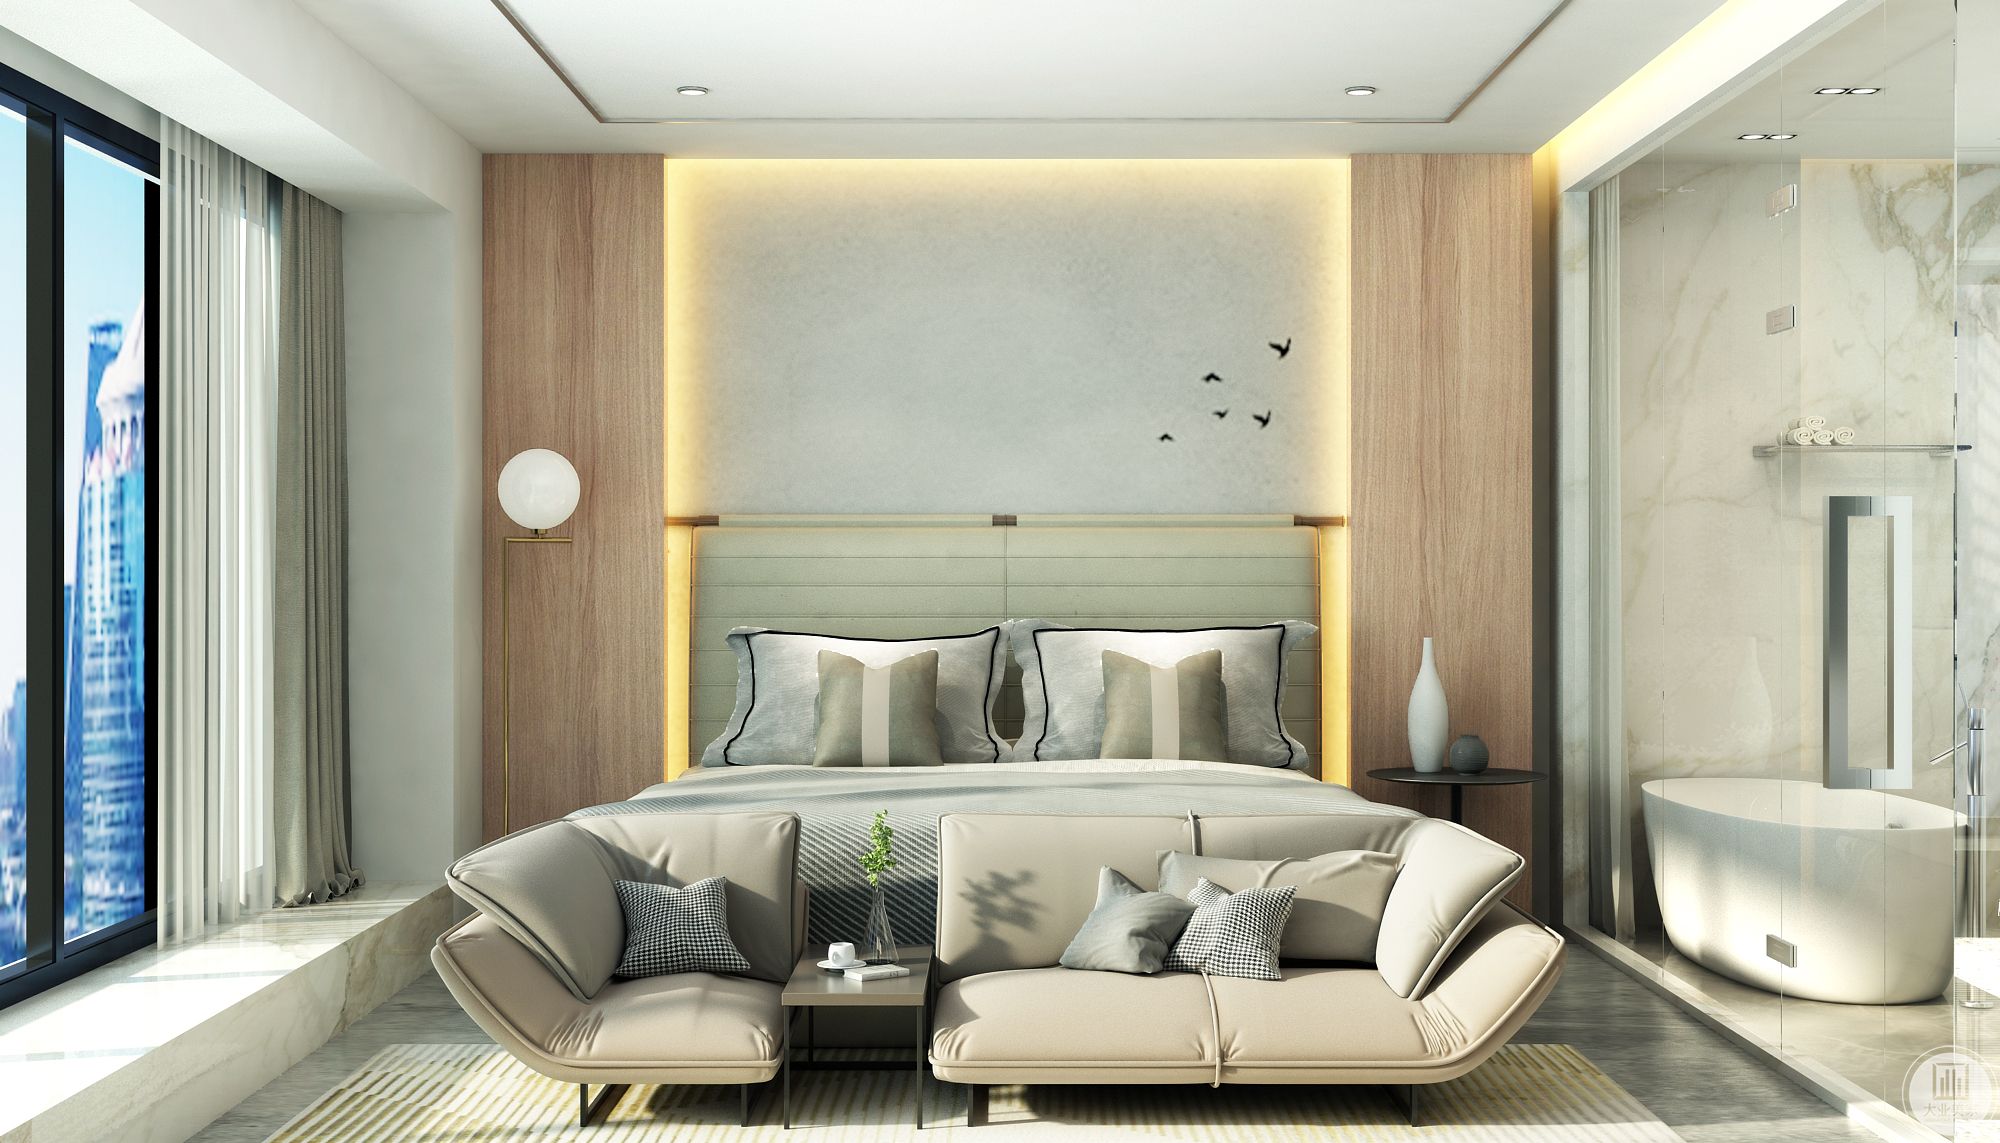 简单造型的床头背景墙让空间增加了层次。影影绰绰的灯带给卧室增添了温馨、浪漫的气息。直线形的床头灯充满了现代感。